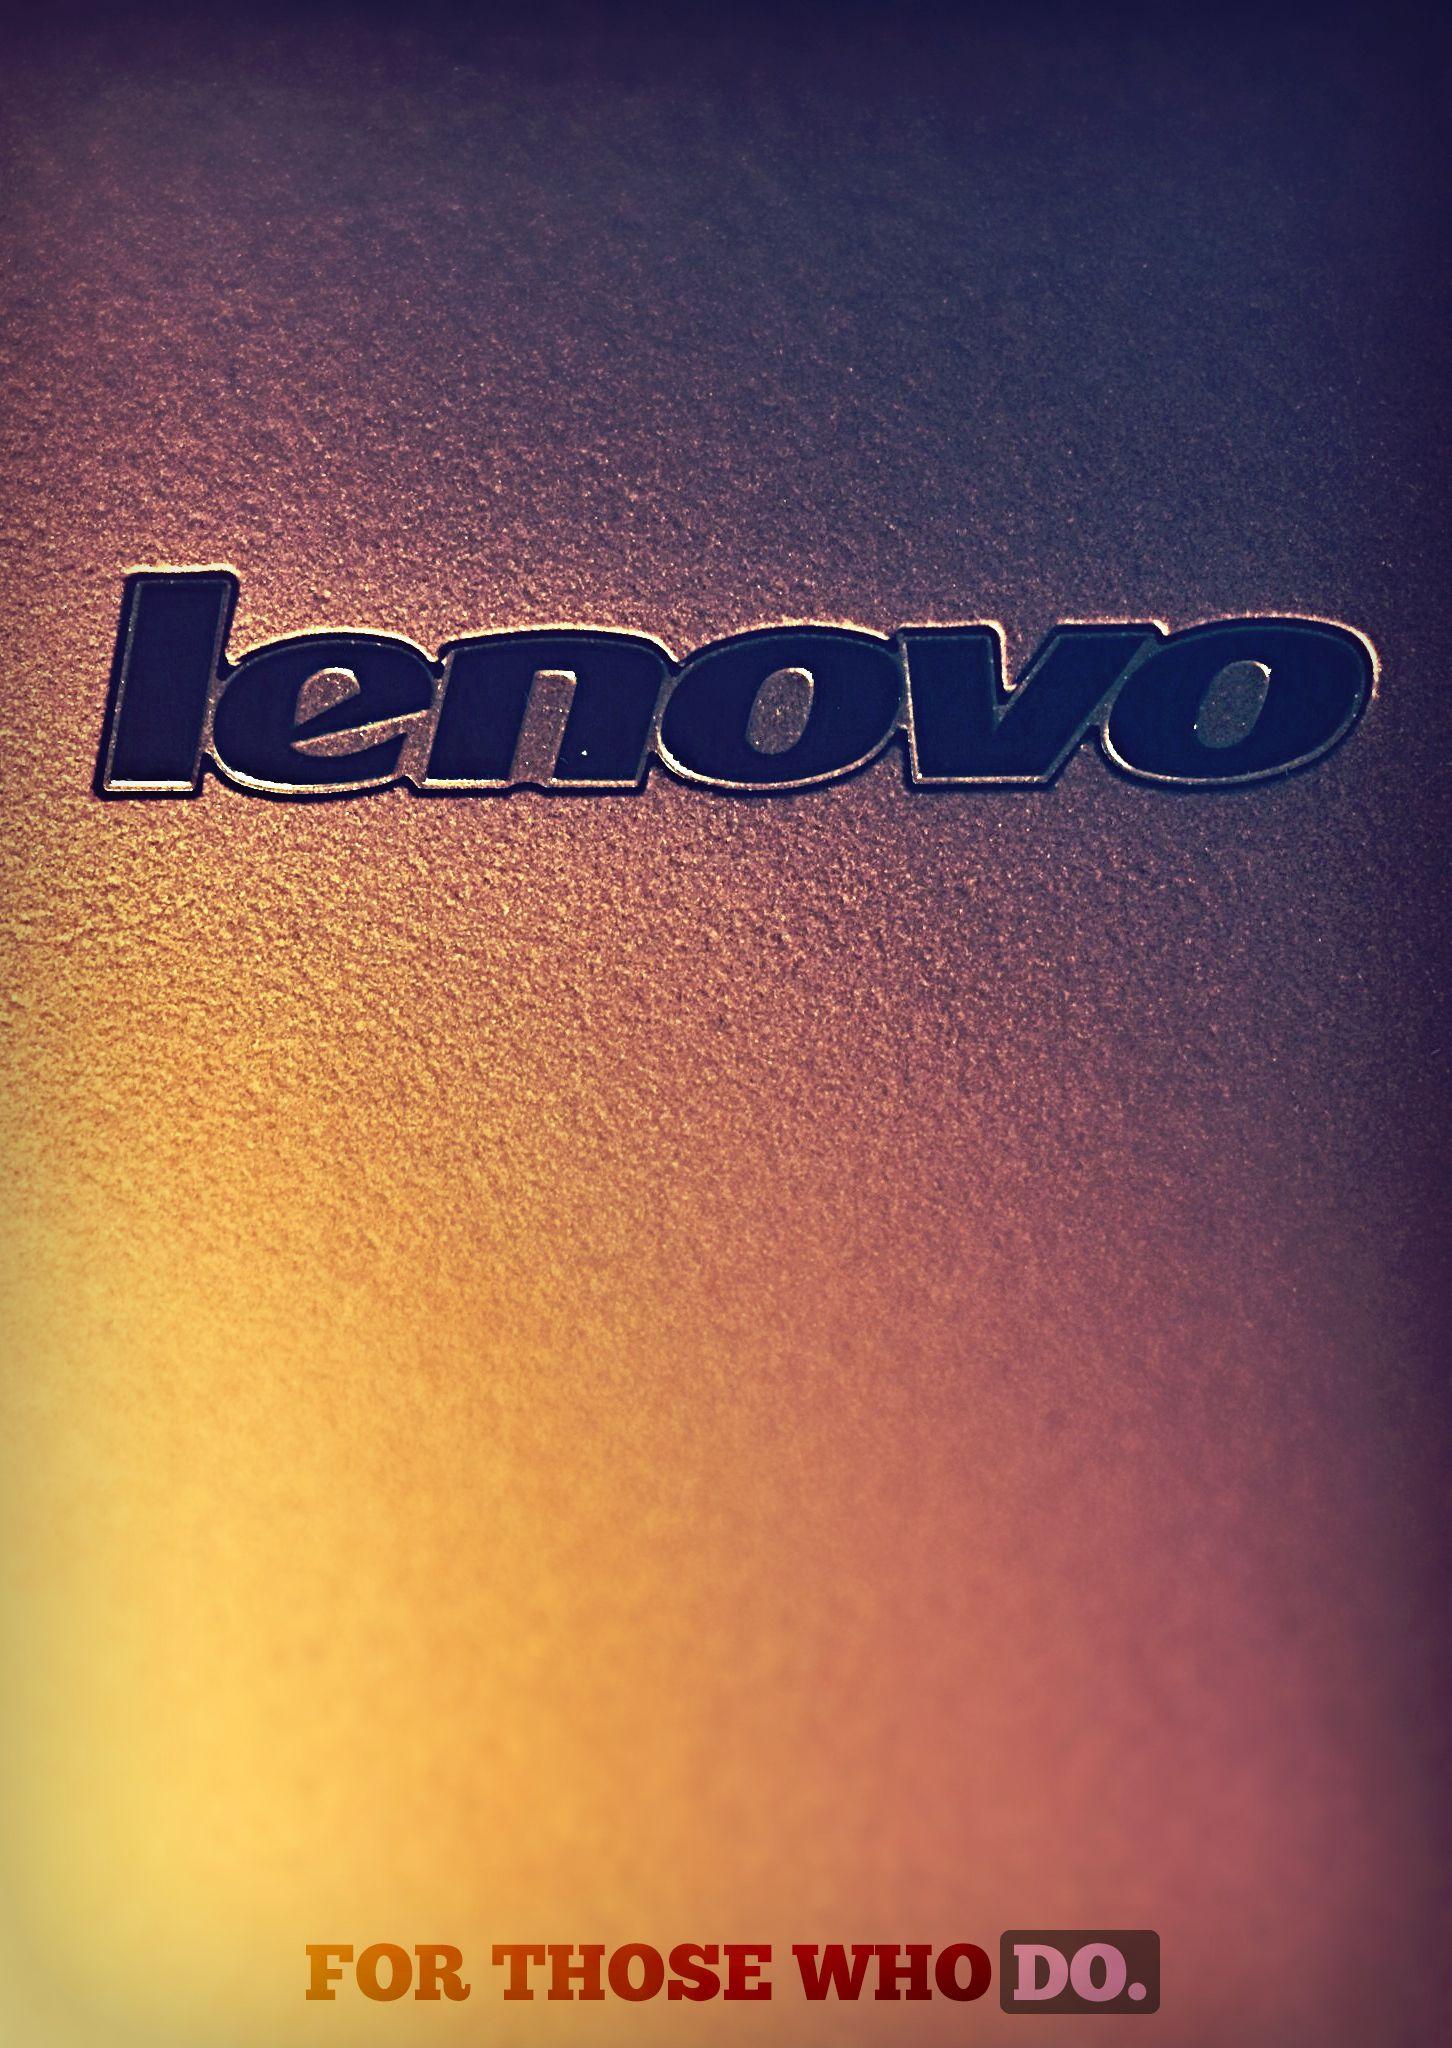 Lenovo Wallpaper (23)